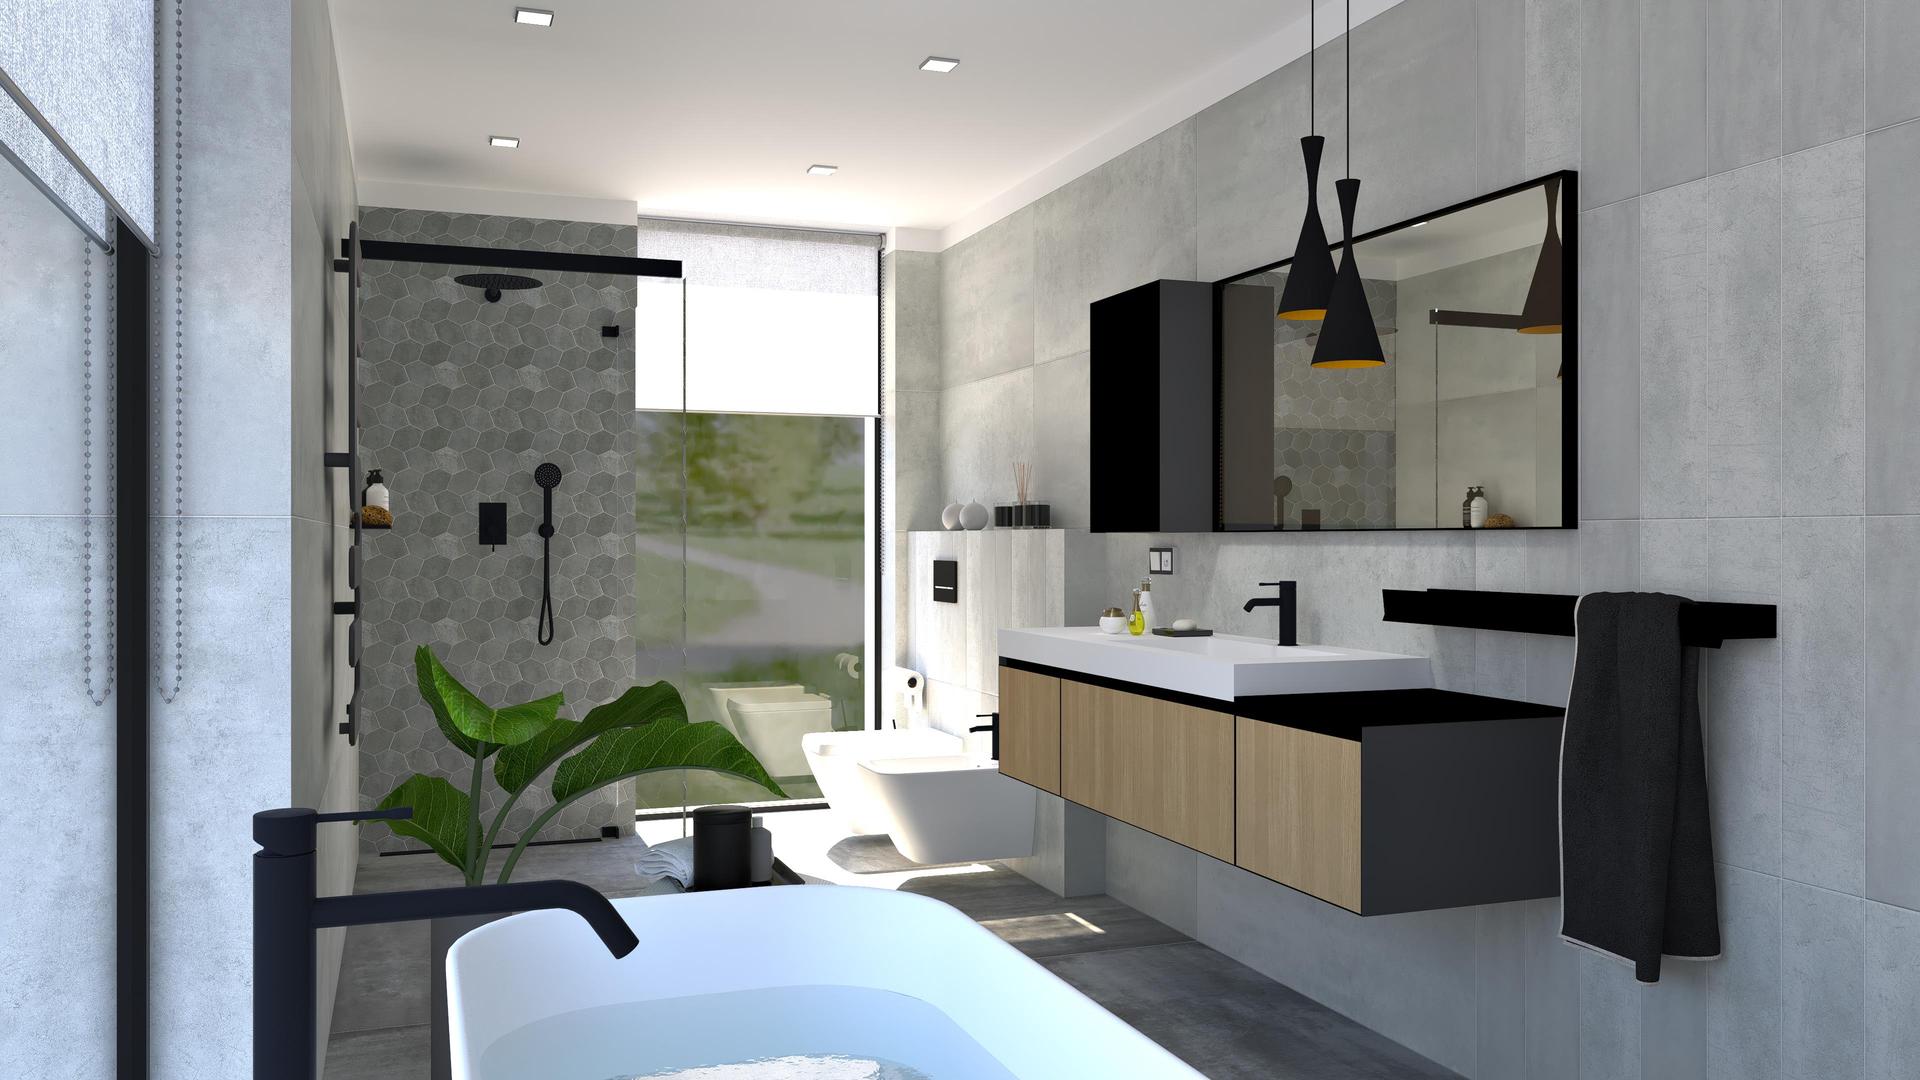 Návrhy kúpeľní 2021 - Vizualizácia kúpeľne /
Sivý obklad s jemným metalickým odleskom, čierne doplnky, hexagónová mozaika.